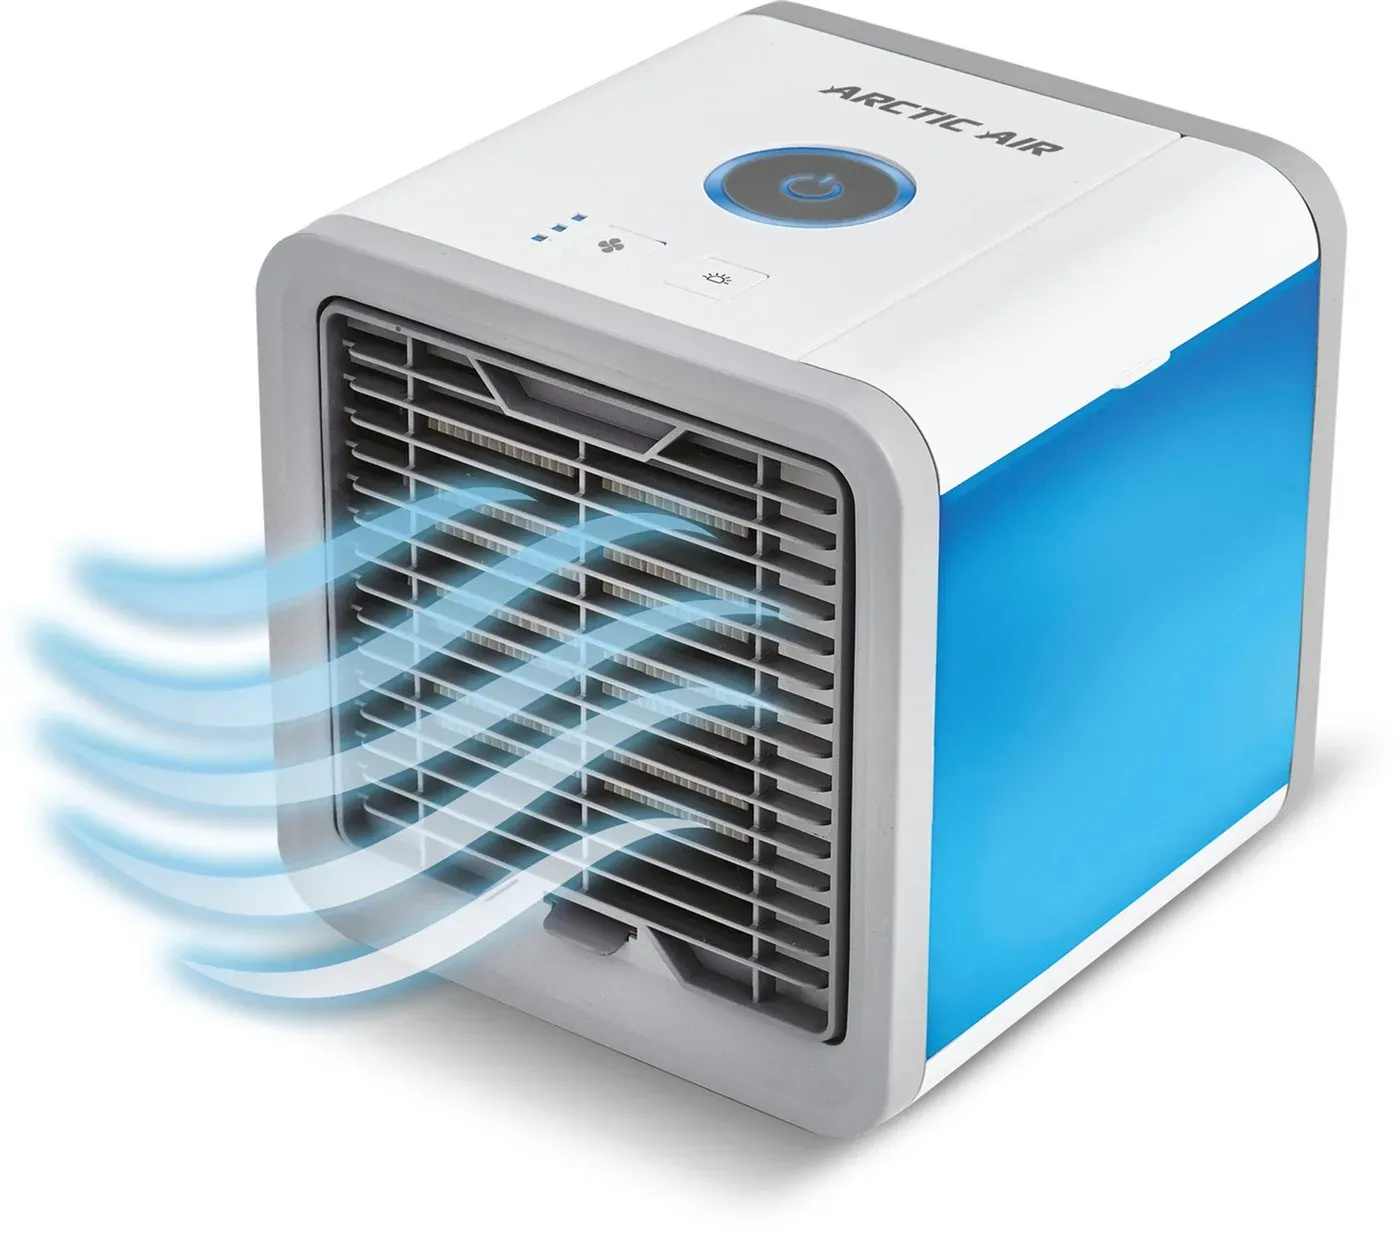 MediaShop Ventilatorkombigerät Arctic Air, Luftkühler, kühlt, befeuchtet und erfrischt die Luft in Ihrer Umgebung blau|weiß